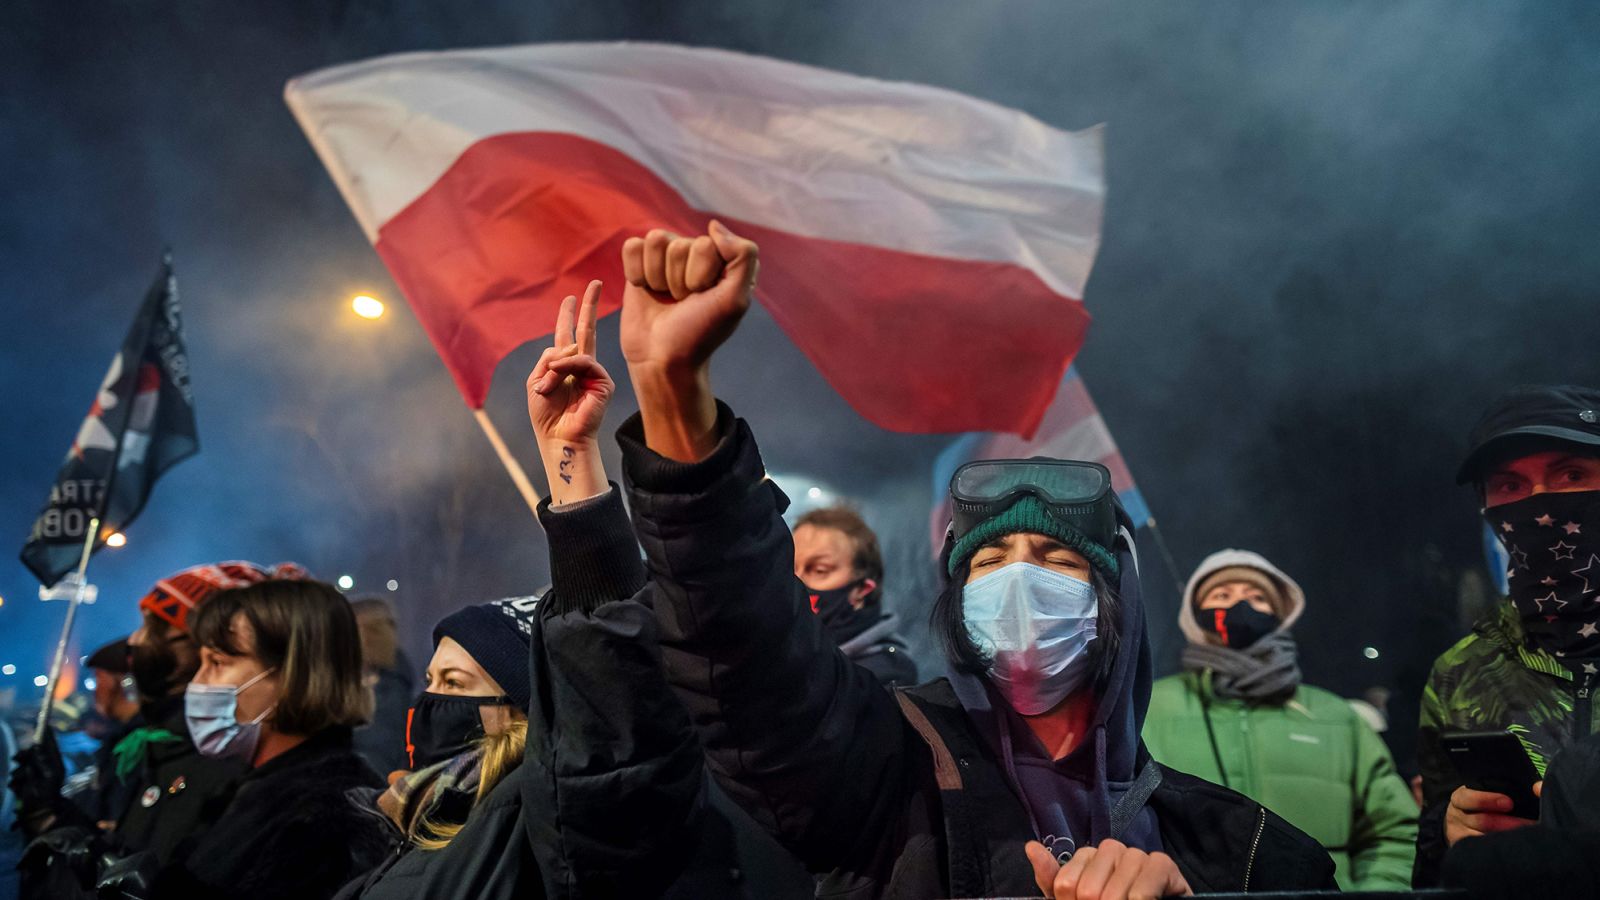 Polscy prawodawcy popierają plany zniesienia niemal całkowitego zakazu aborcji, który może wywołać konflikt polityczny